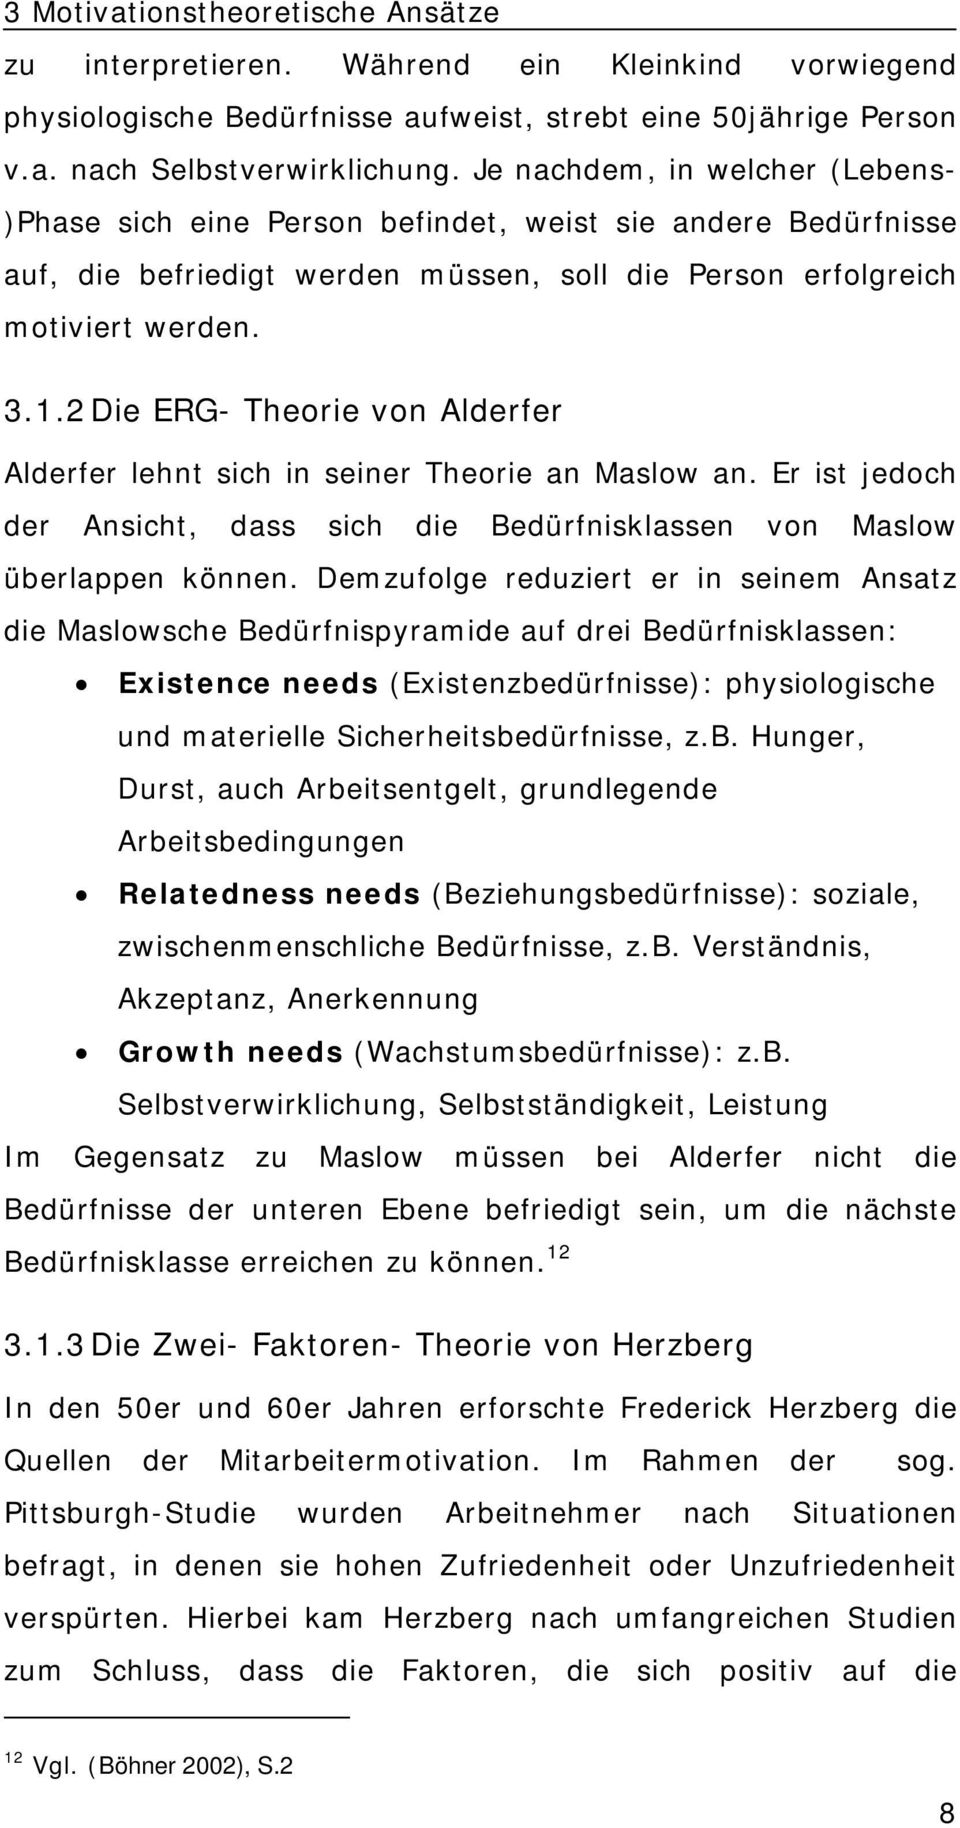 2 Die ERG- Theorie von Alderfer Alderfer lehnt sich in seiner Theorie an Maslow an. Er ist jedoch der Ansicht, dass sich die Bedürfnisklassen von Maslow überlappen können.